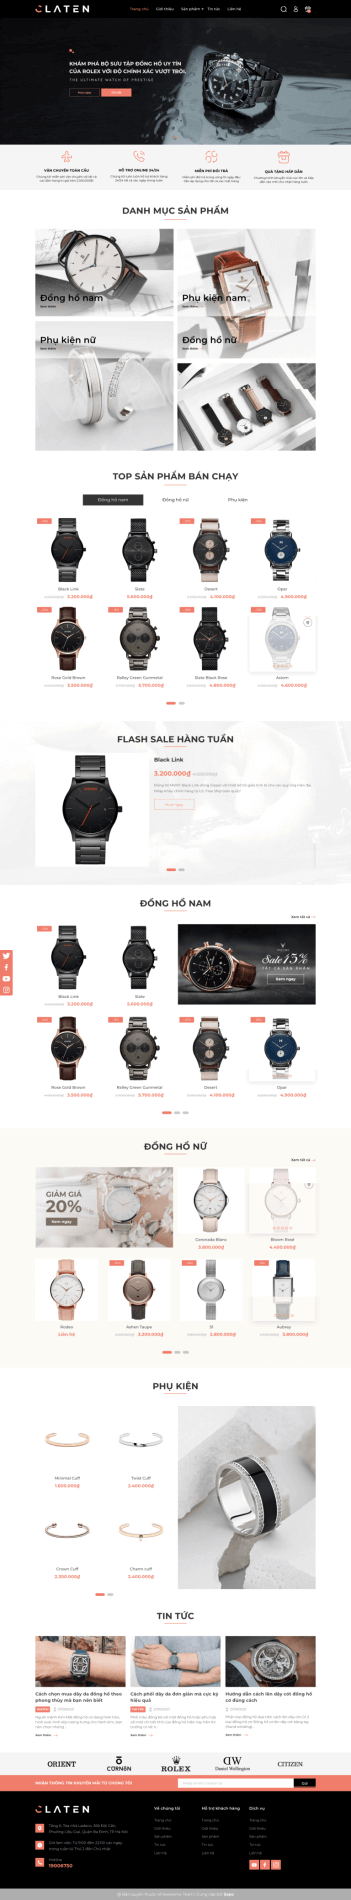 Giao diện website kinh doanh đồng hồ, trang sức Claten 15